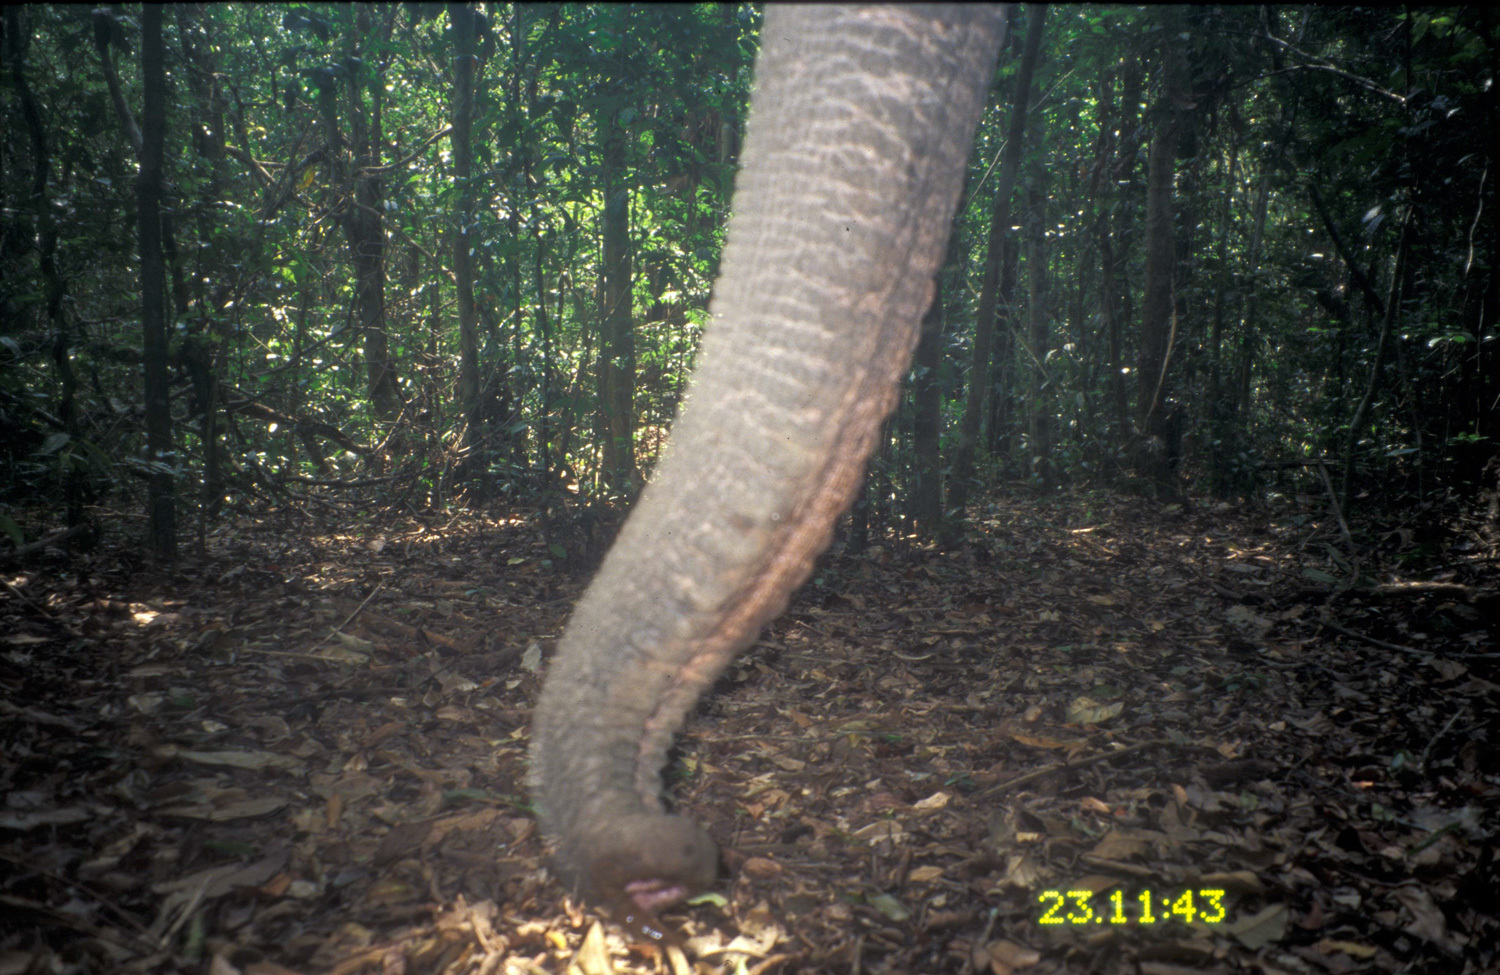 Image of Asian elephant